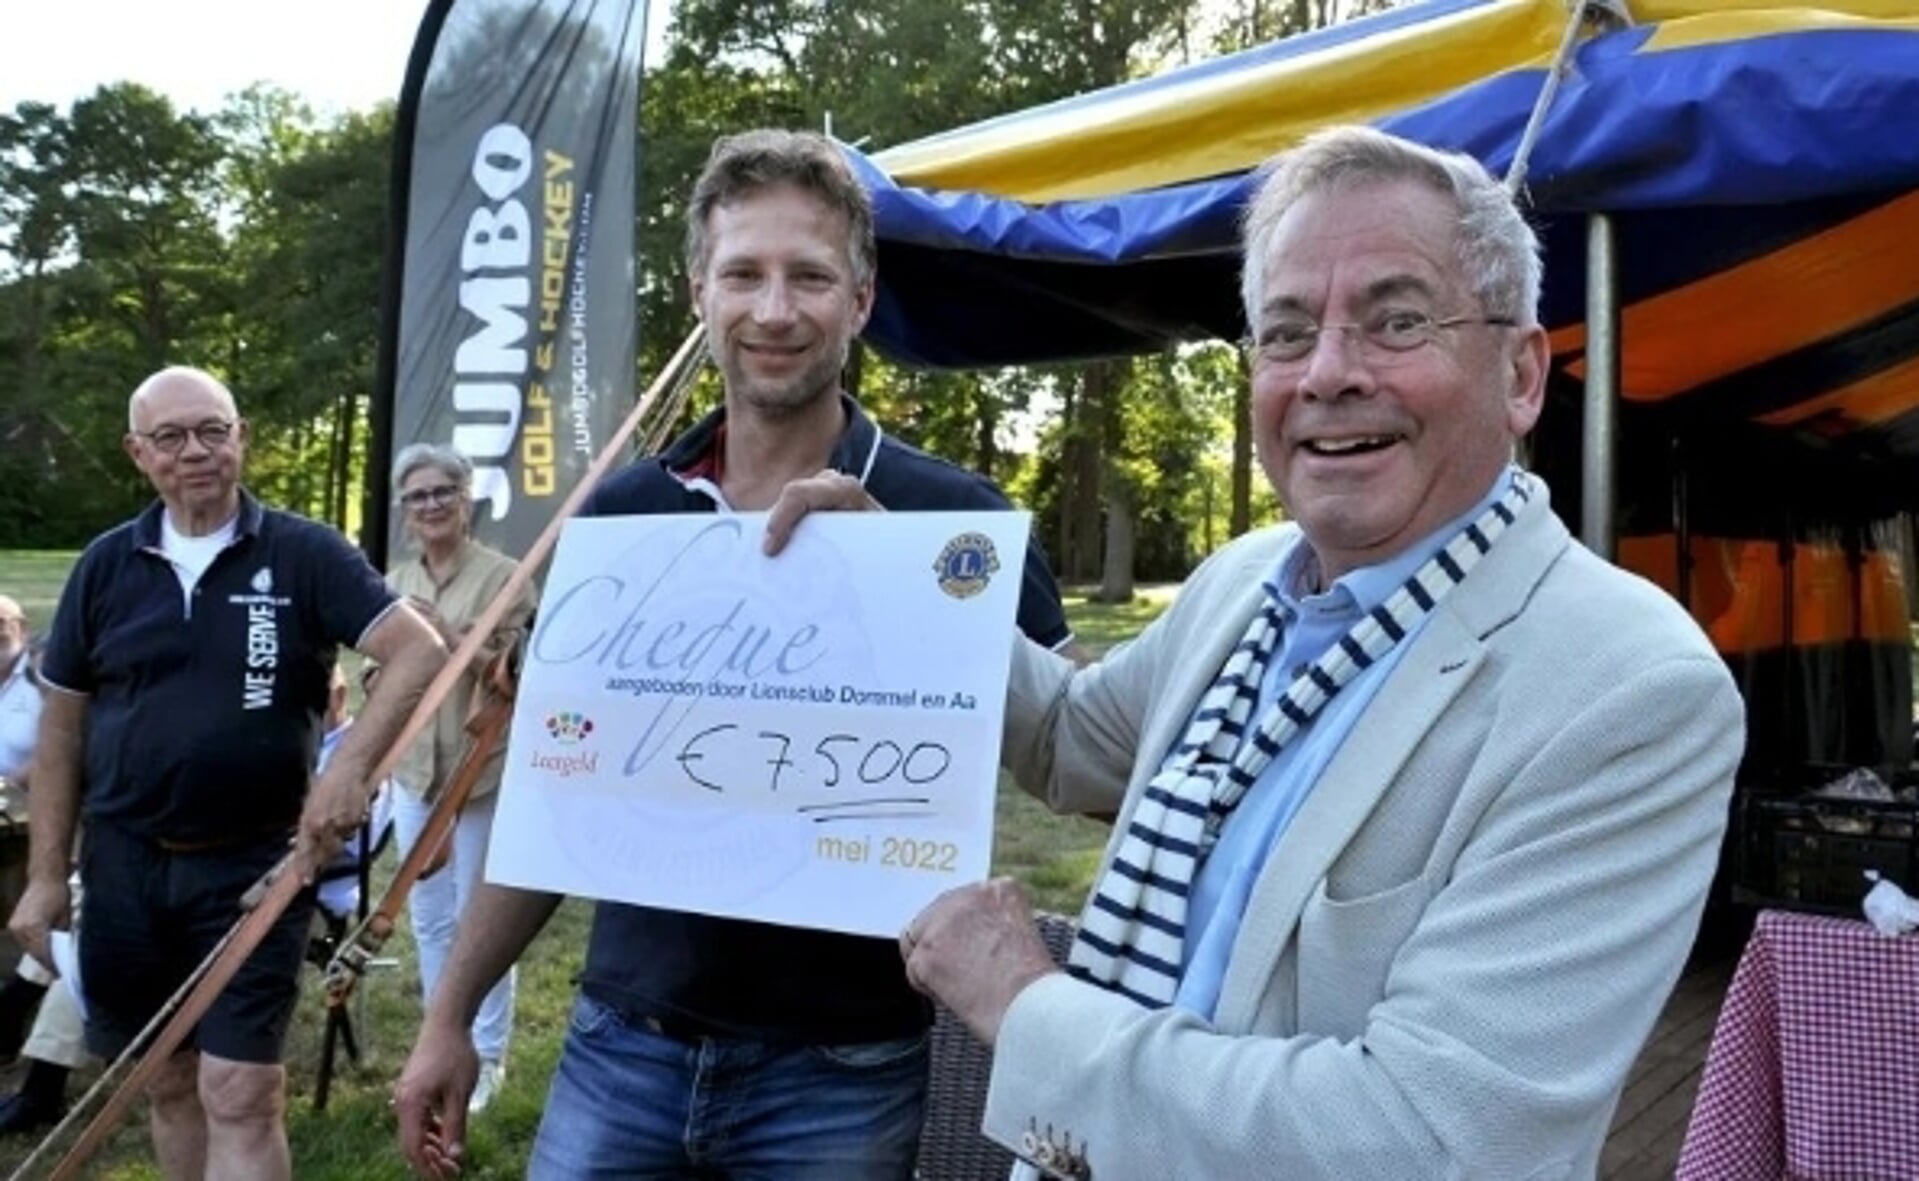 Stichting Leergeld-voorzitter Arjen Witteveen ontvangt de cheque uit handen van John Brusselers, eigenaar van De Langspier. (Foto: Lionsclub Dommel & Aa)